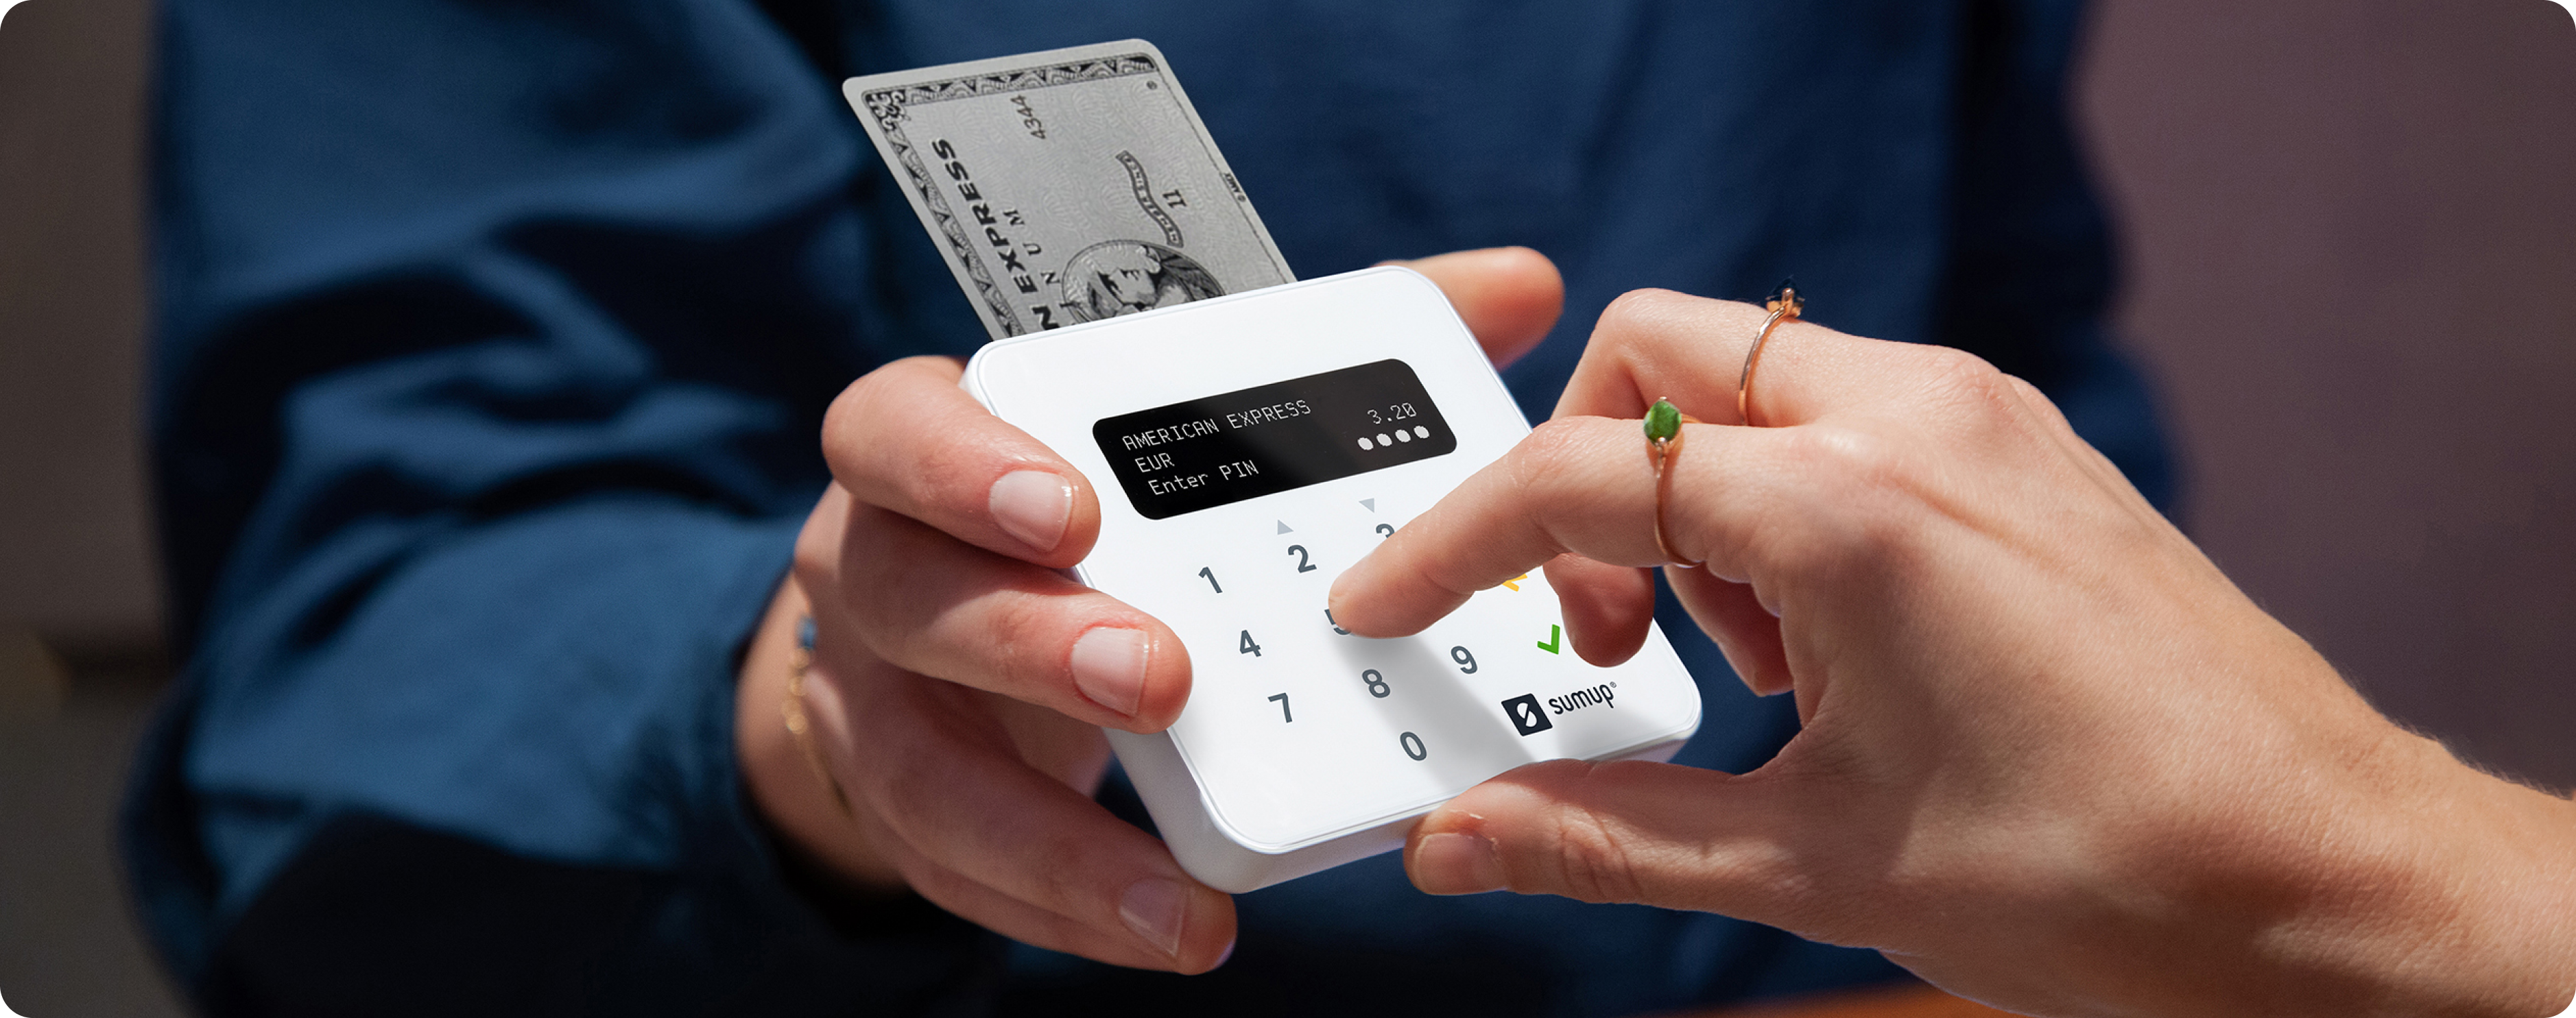 SumUp - Mobile Credit Card Reader : Sumup Air From Directshopfittings Ltd